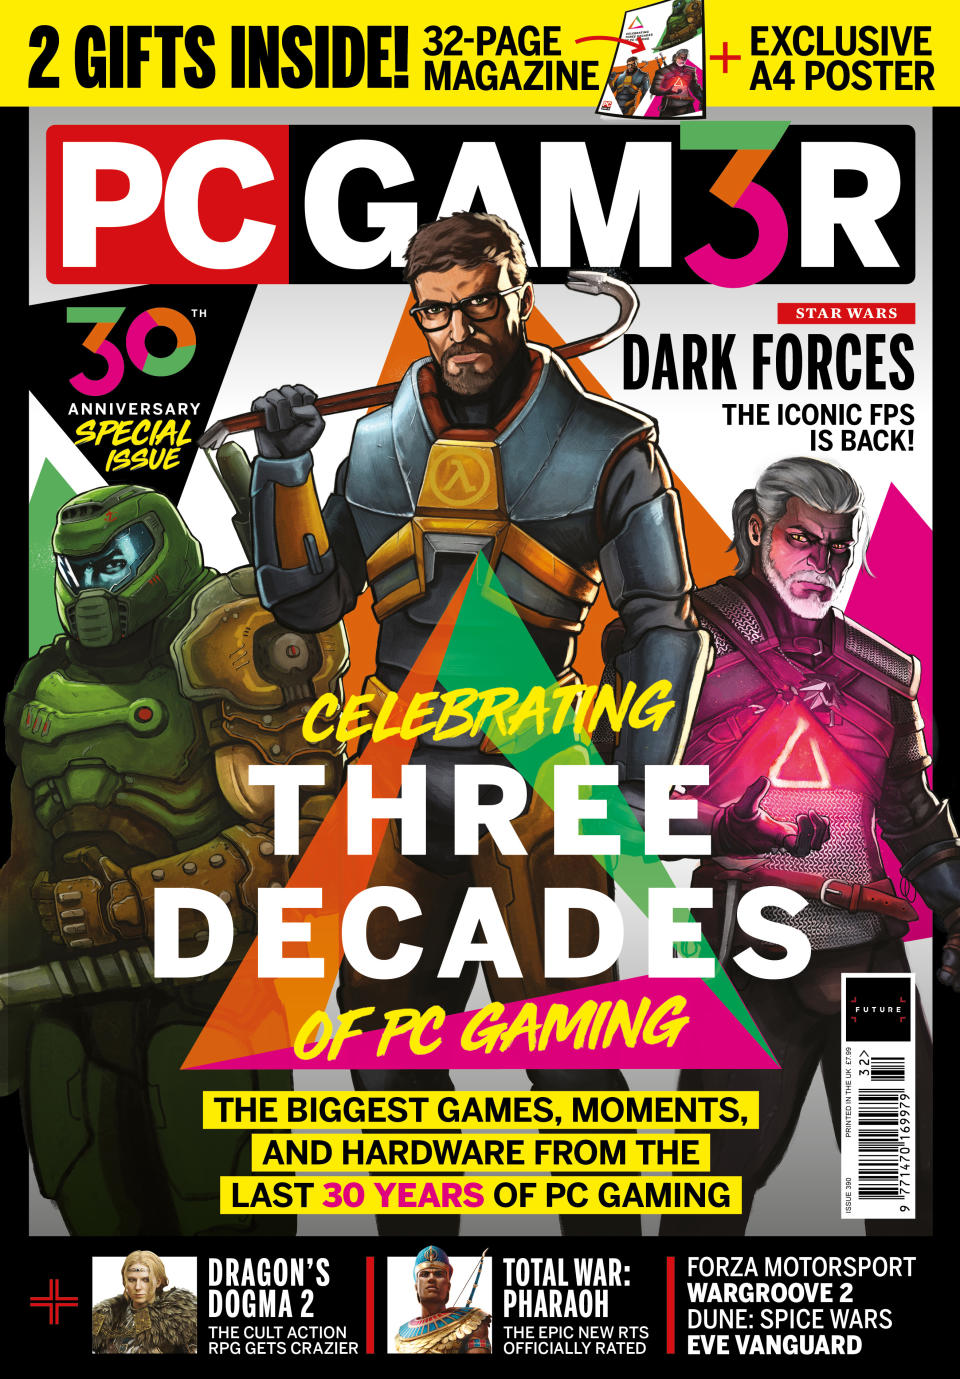 PC Gamer magazine 30th anniversary issue